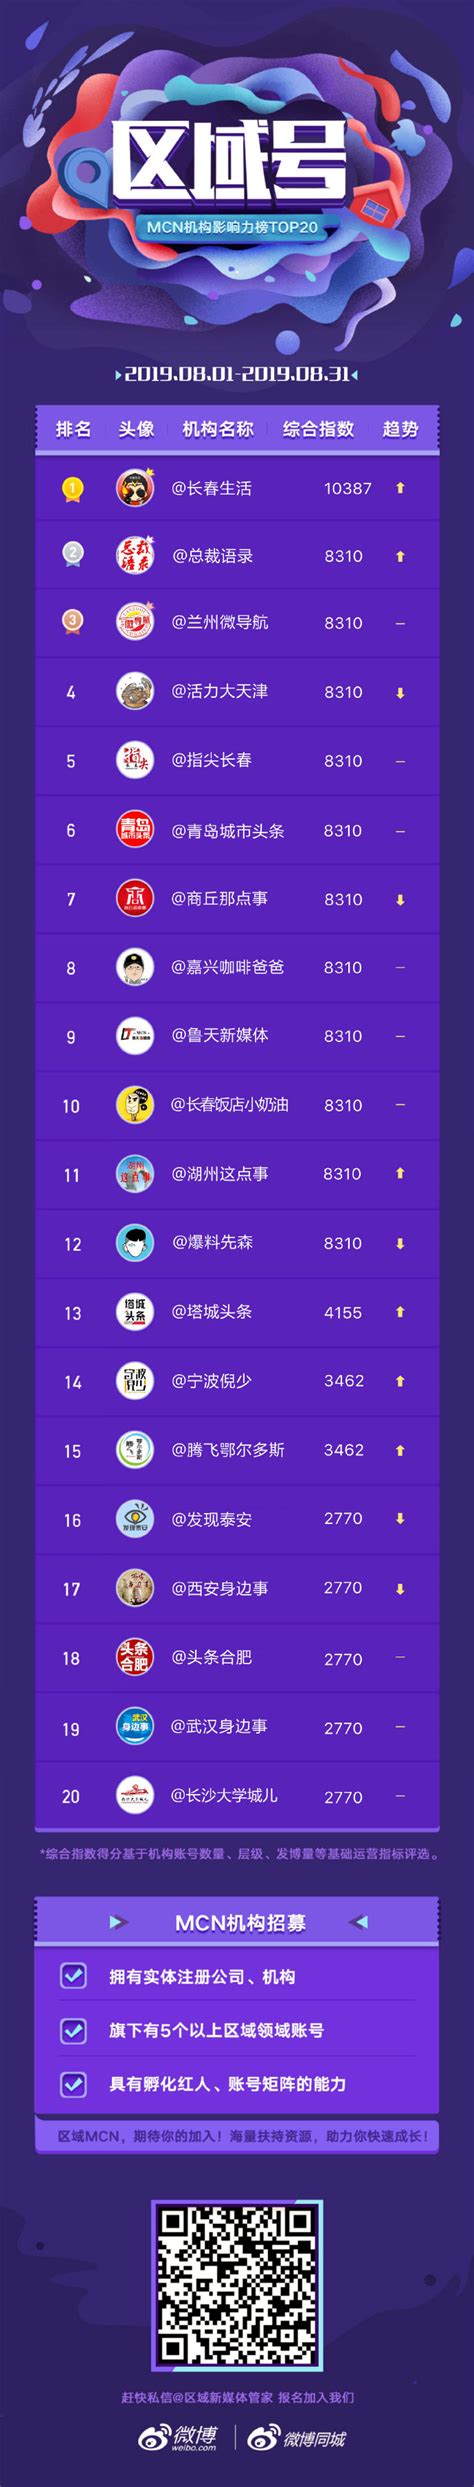 微博区域MCN排行榜top20名单_陈昌文老板社群